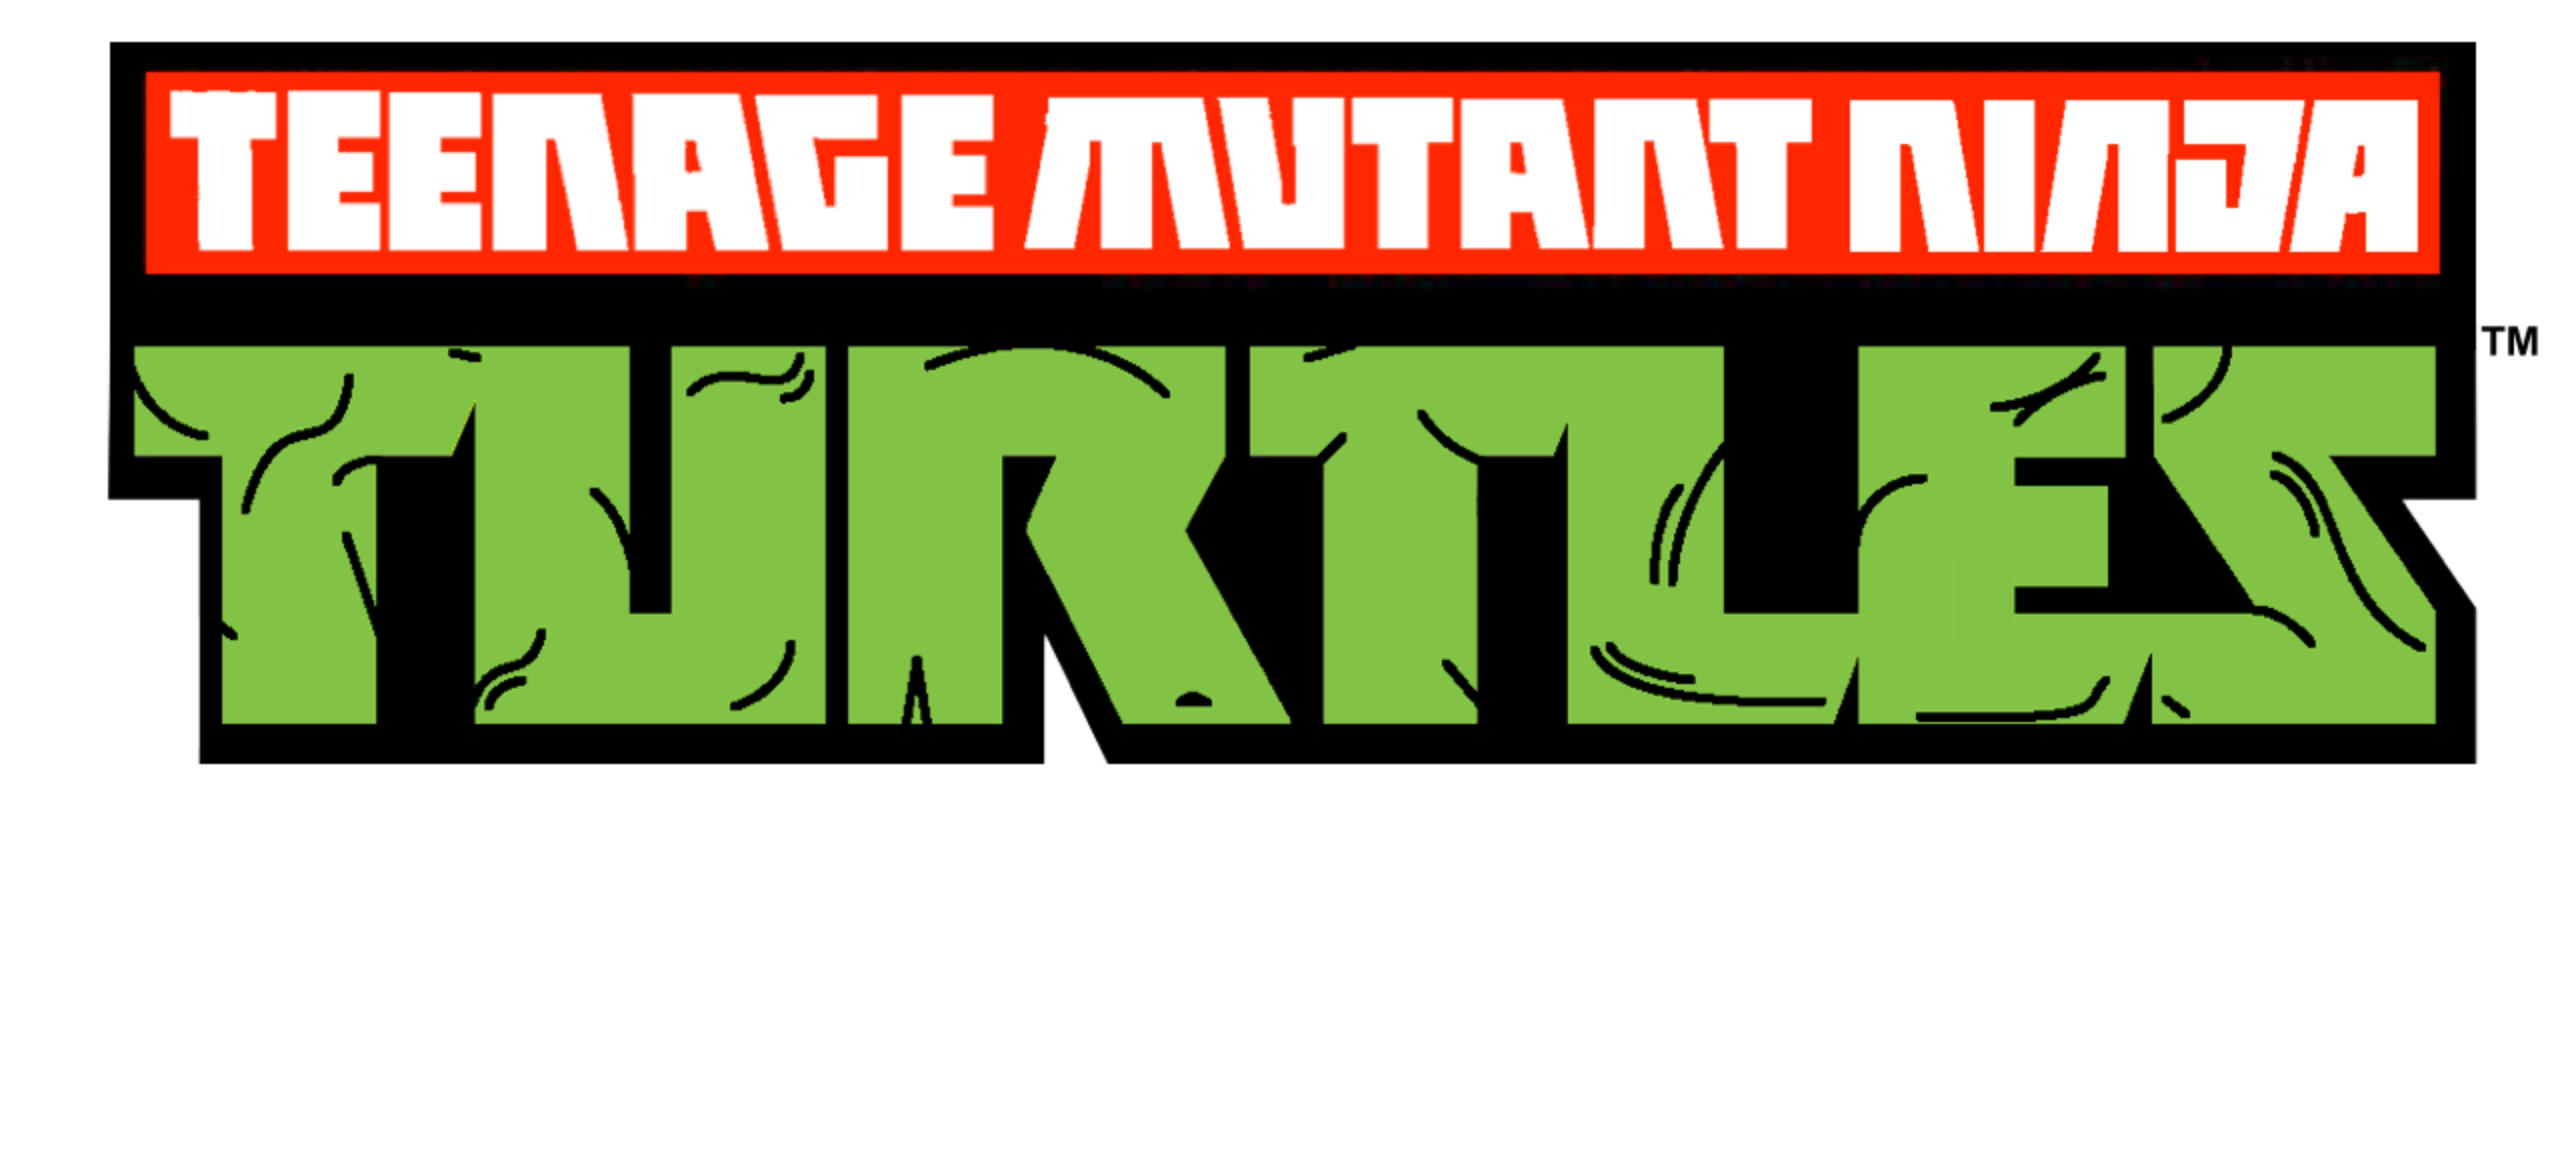 Teenage Mutant Ninja Turtles 2012 Complete (13 DVDs Box Set)